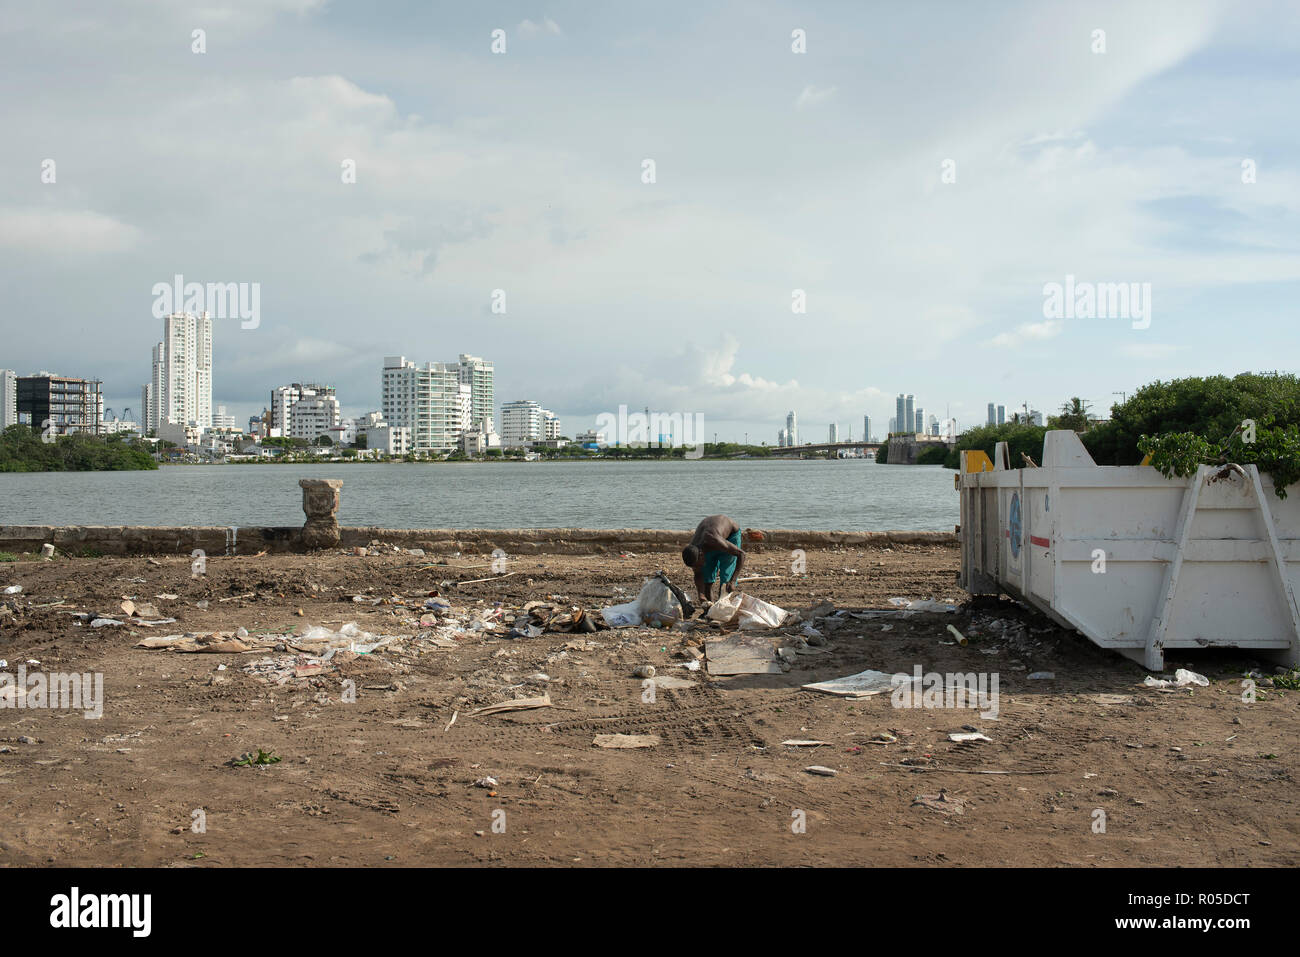 Gegenüberstellung von Arm und Reich. Junge afrikanische Mann sucht durch Müll mit glänzenden neuen Gebäude im Hintergrund. Cartagena, Kolumbien. Sep 2018 Stockfoto